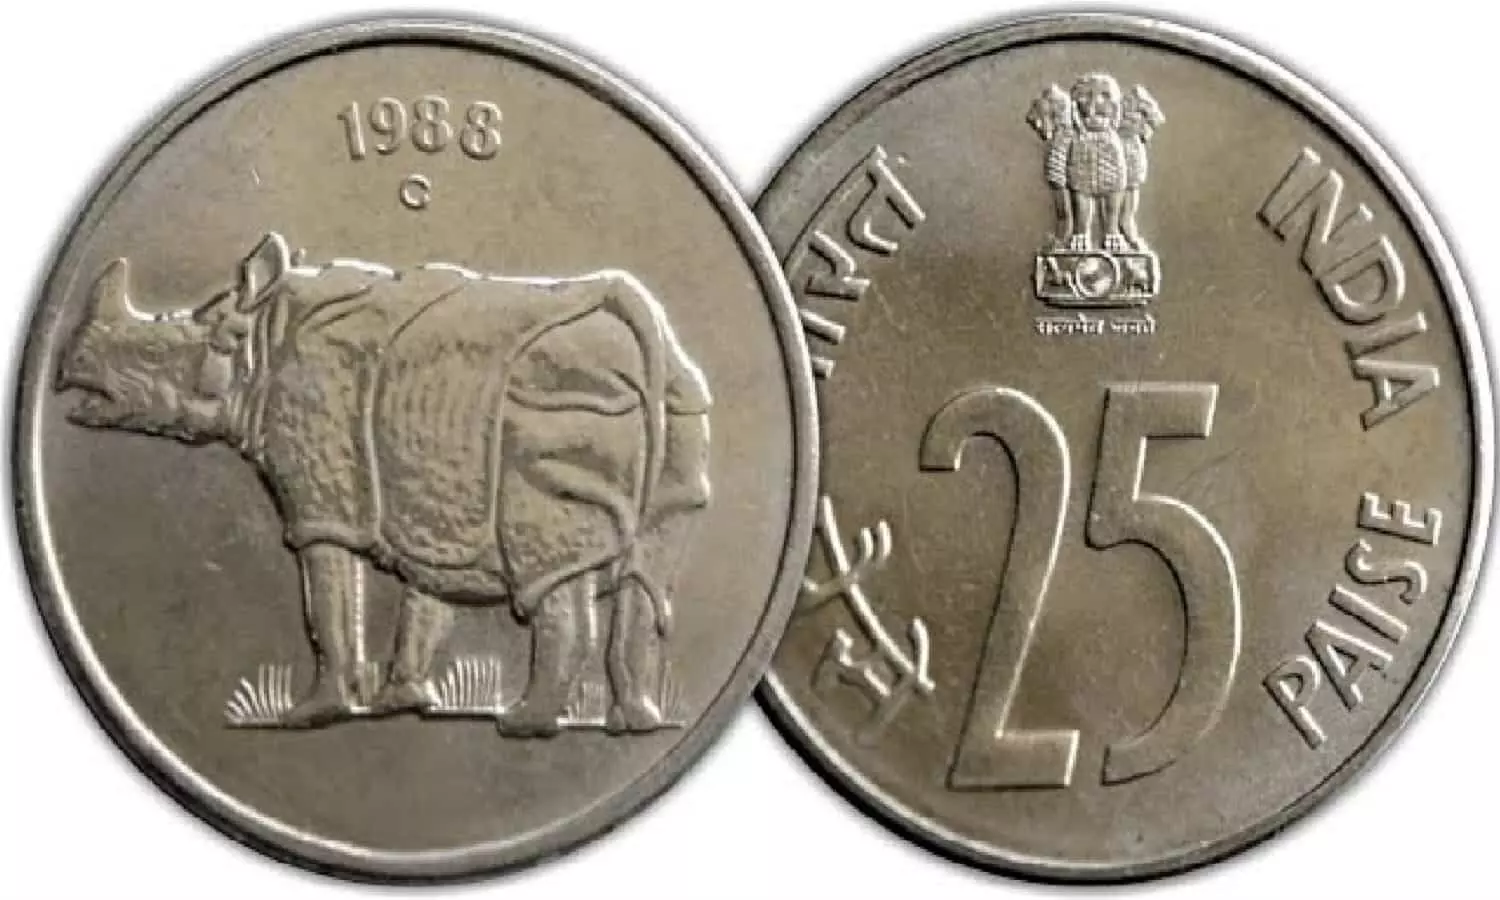 1988 में बना 25 पैसे का गेंडे के चित्र वाला सिक्का आपको बना देगा मालमाल, बेचने पर मिलेंगे 1.5 लाख रुपये, जानिए कैसे?